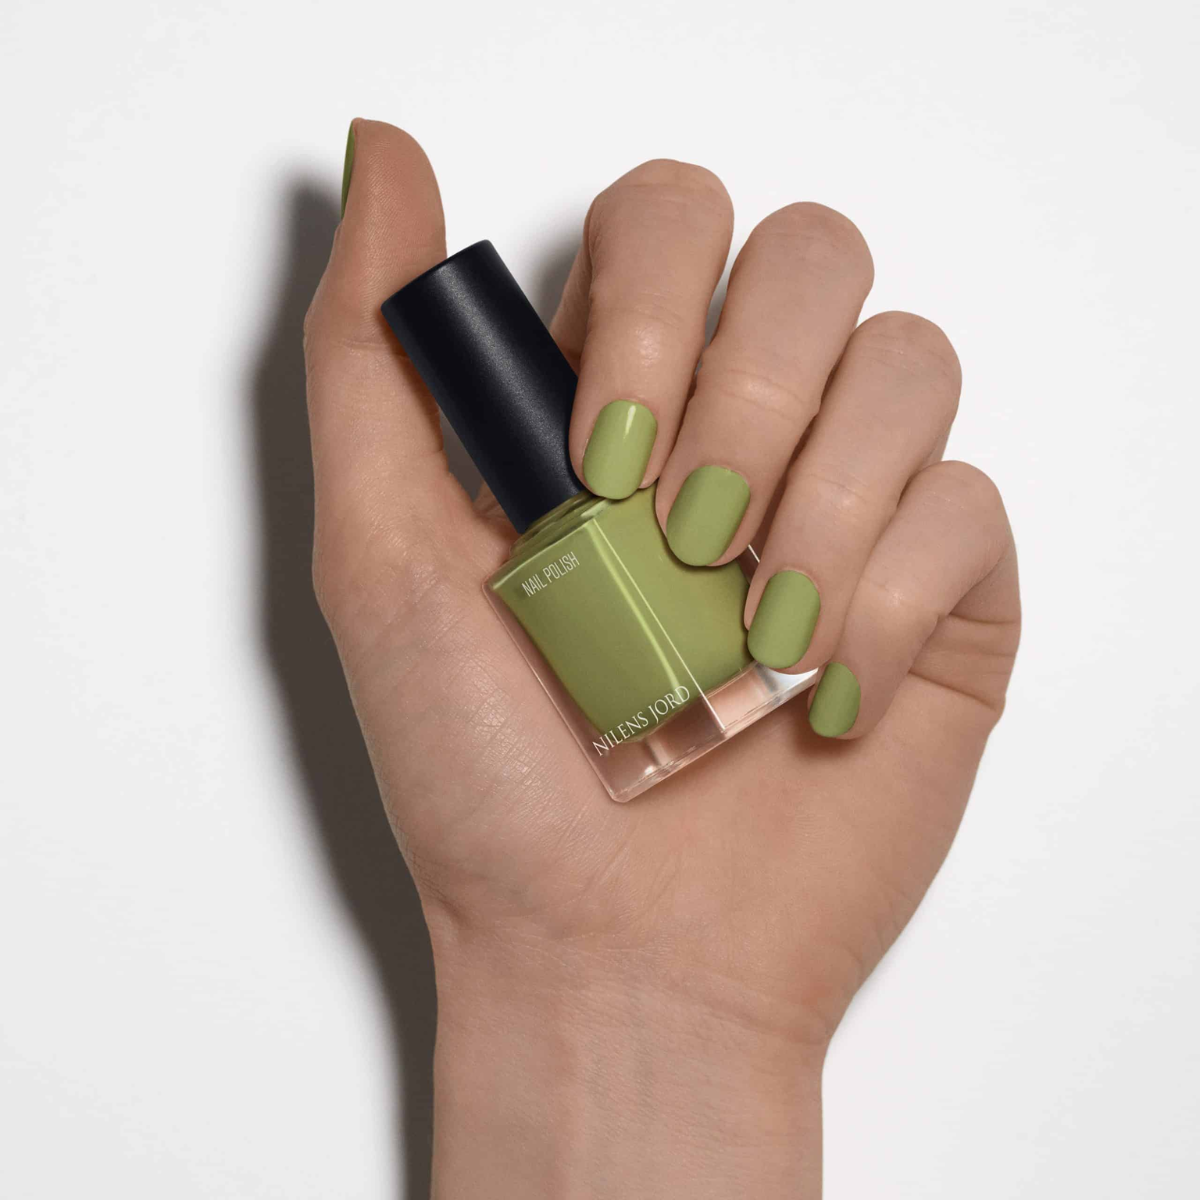 Nilens Jord - Nail Polish – Pastel Green